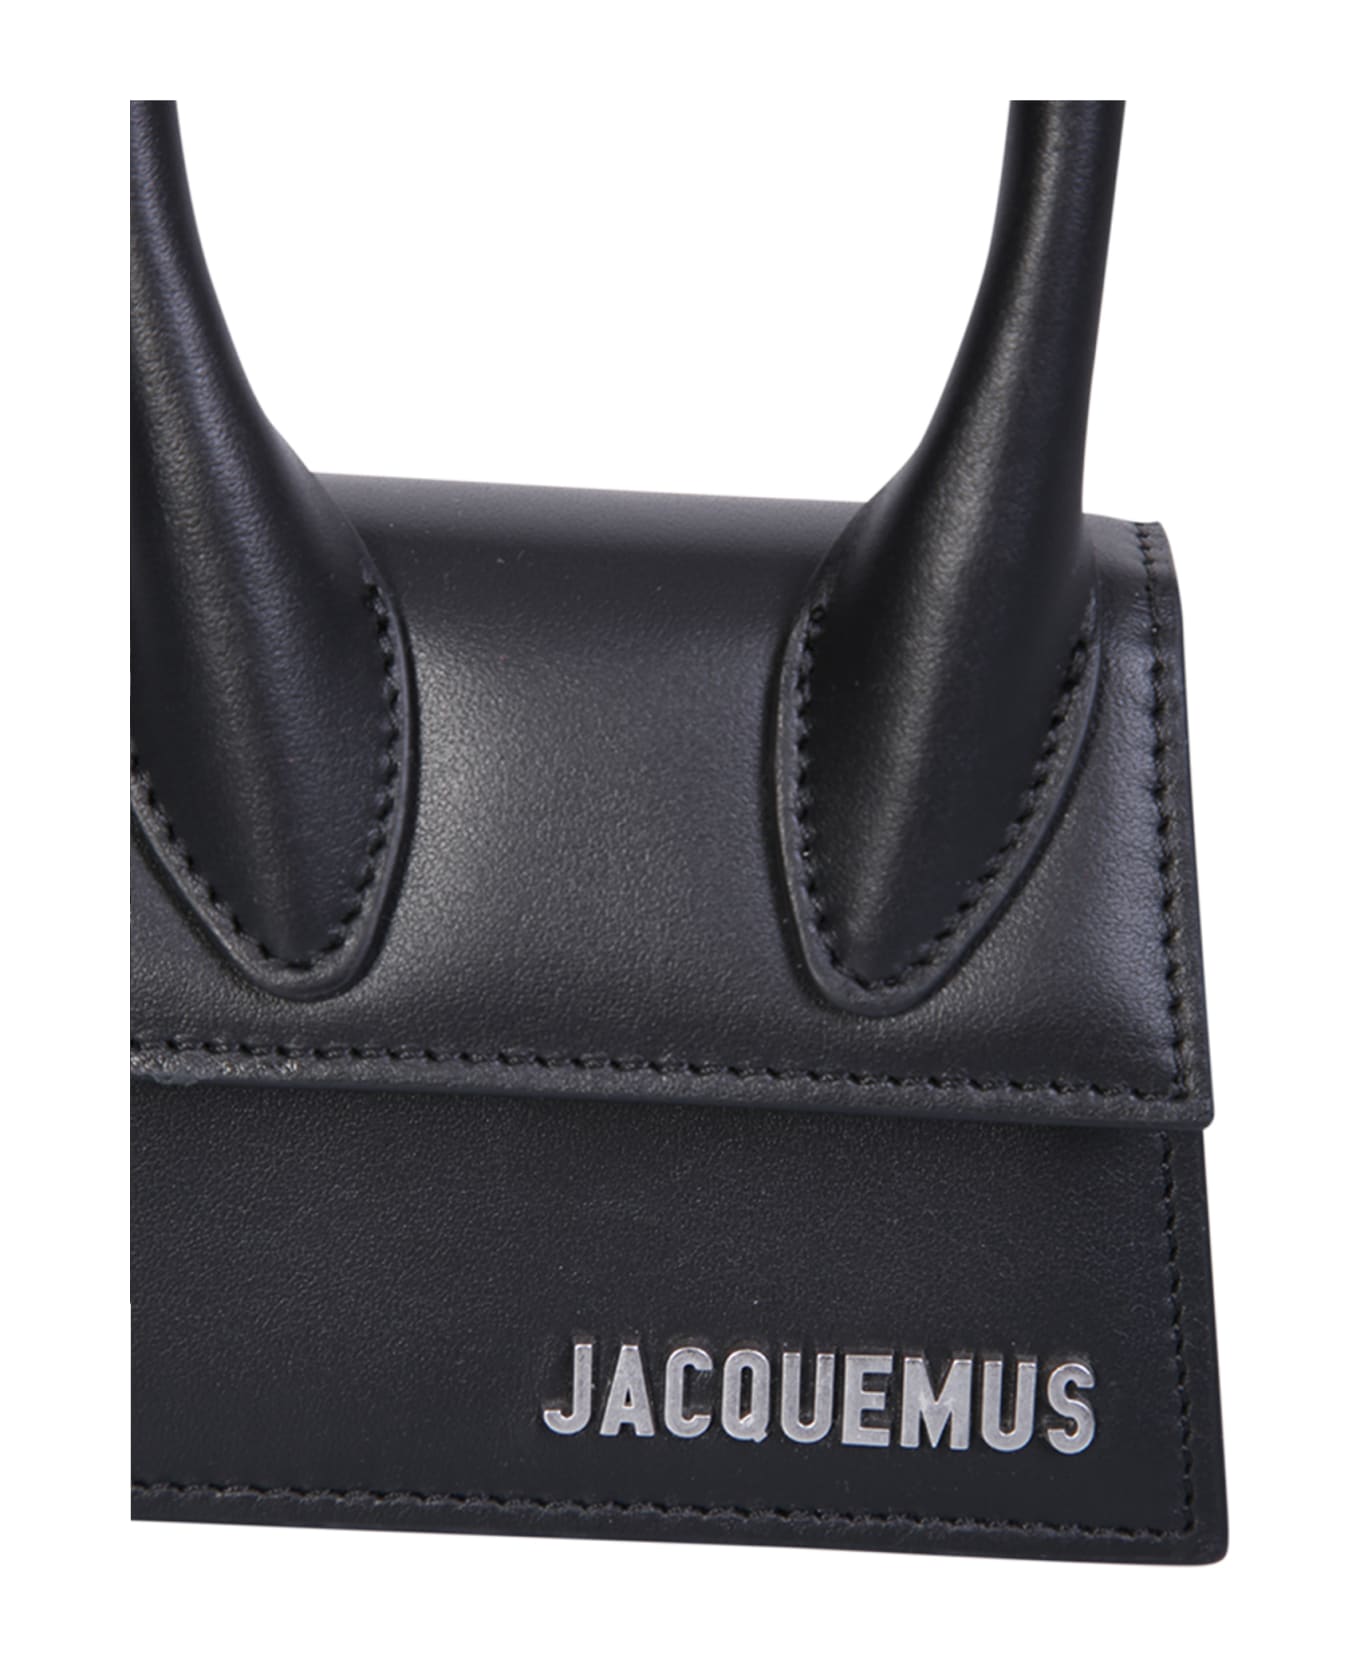 Jacquemus Le Chiquito Homme Bag - 990